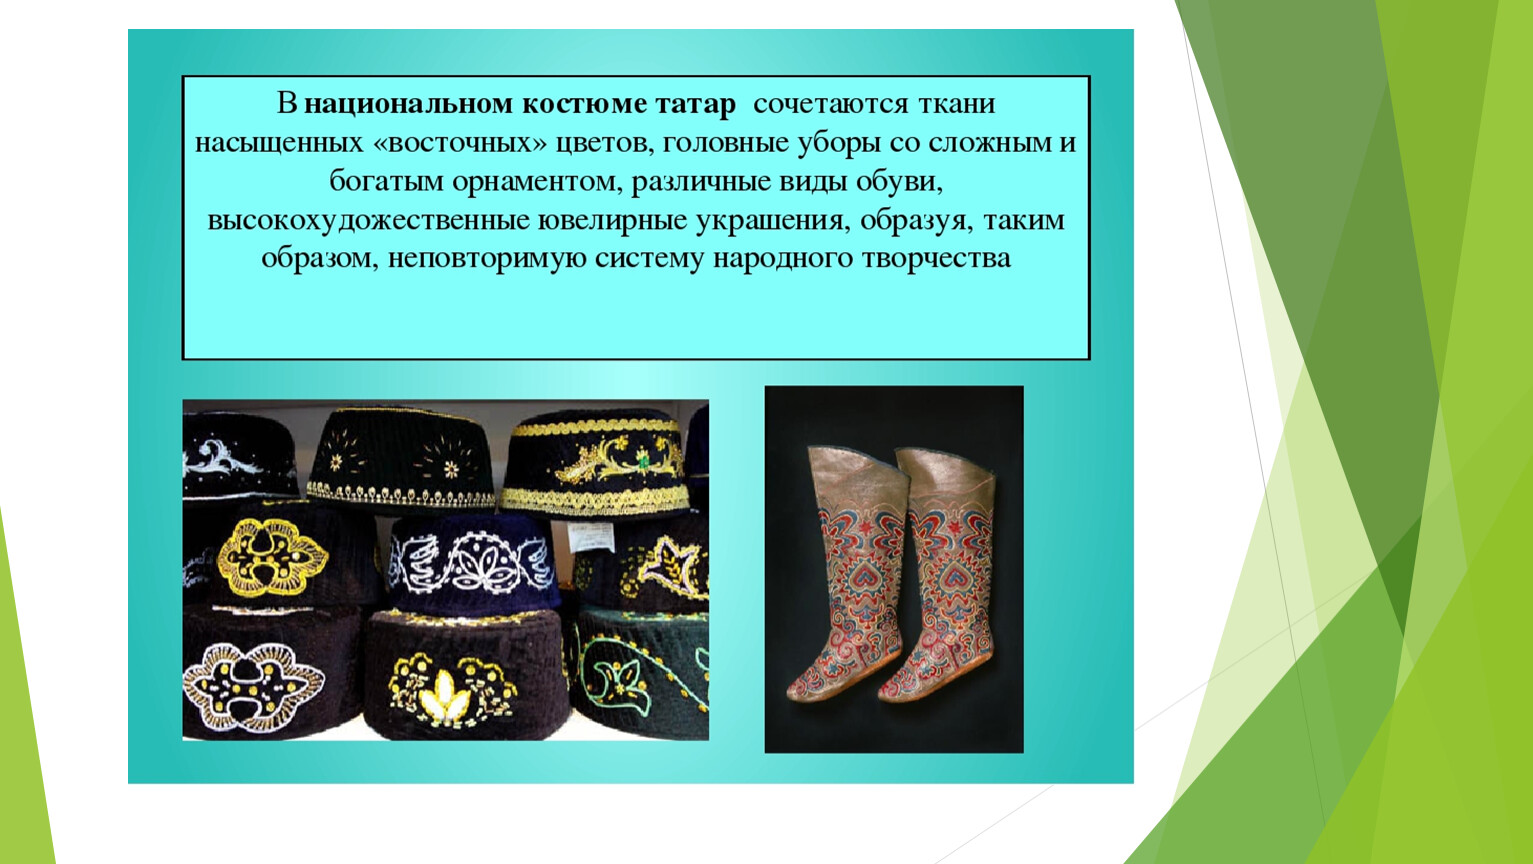 Элементы татарского костюма с названиями